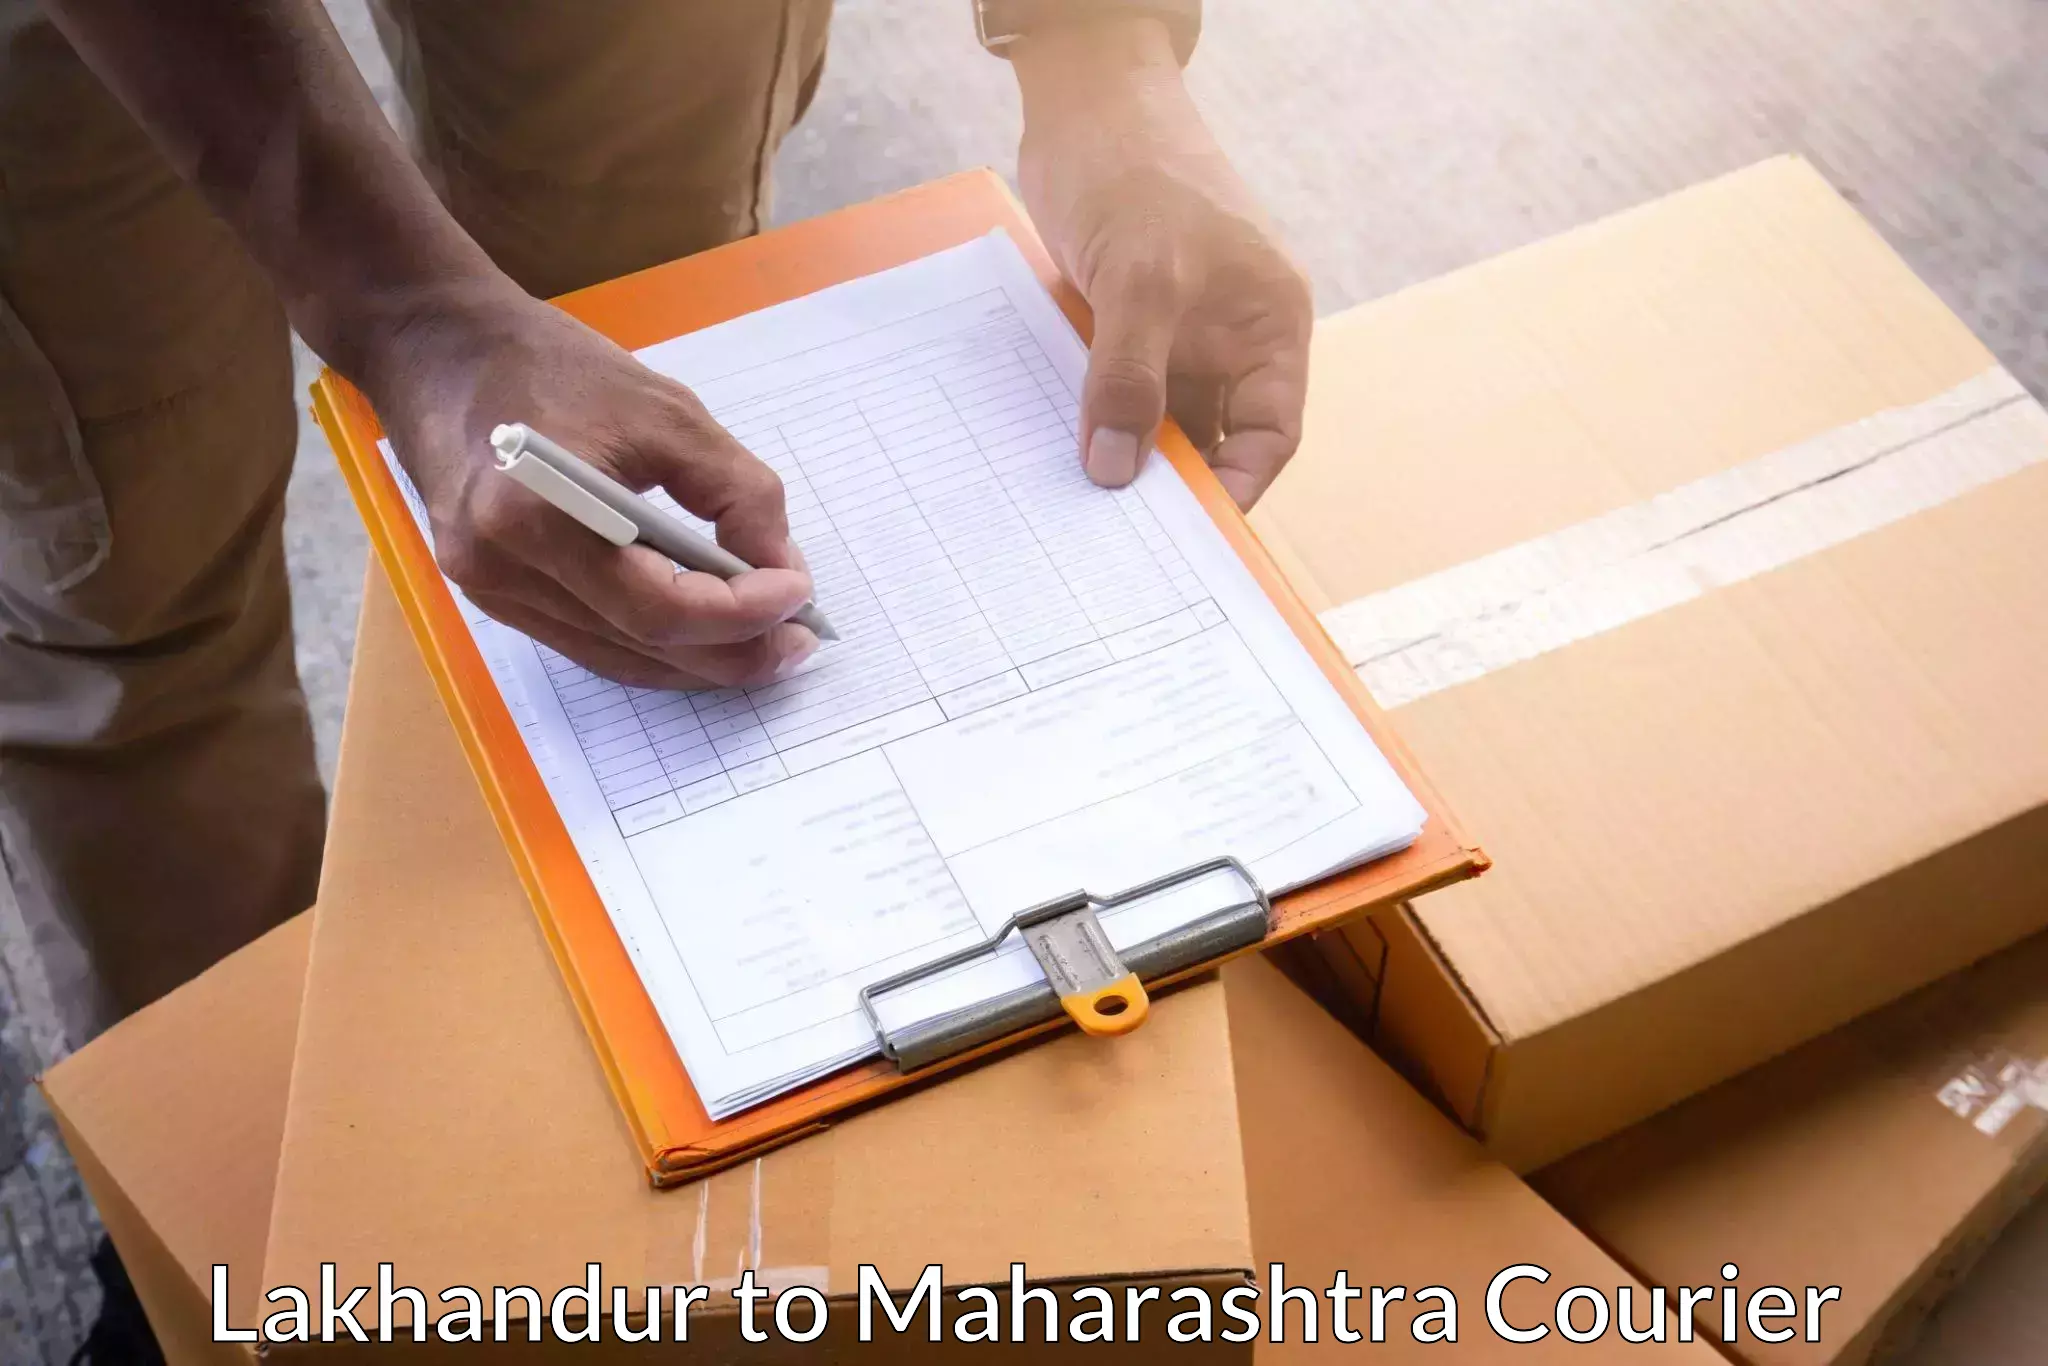 High-capacity parcel service Lakhandur to Shrivardhan